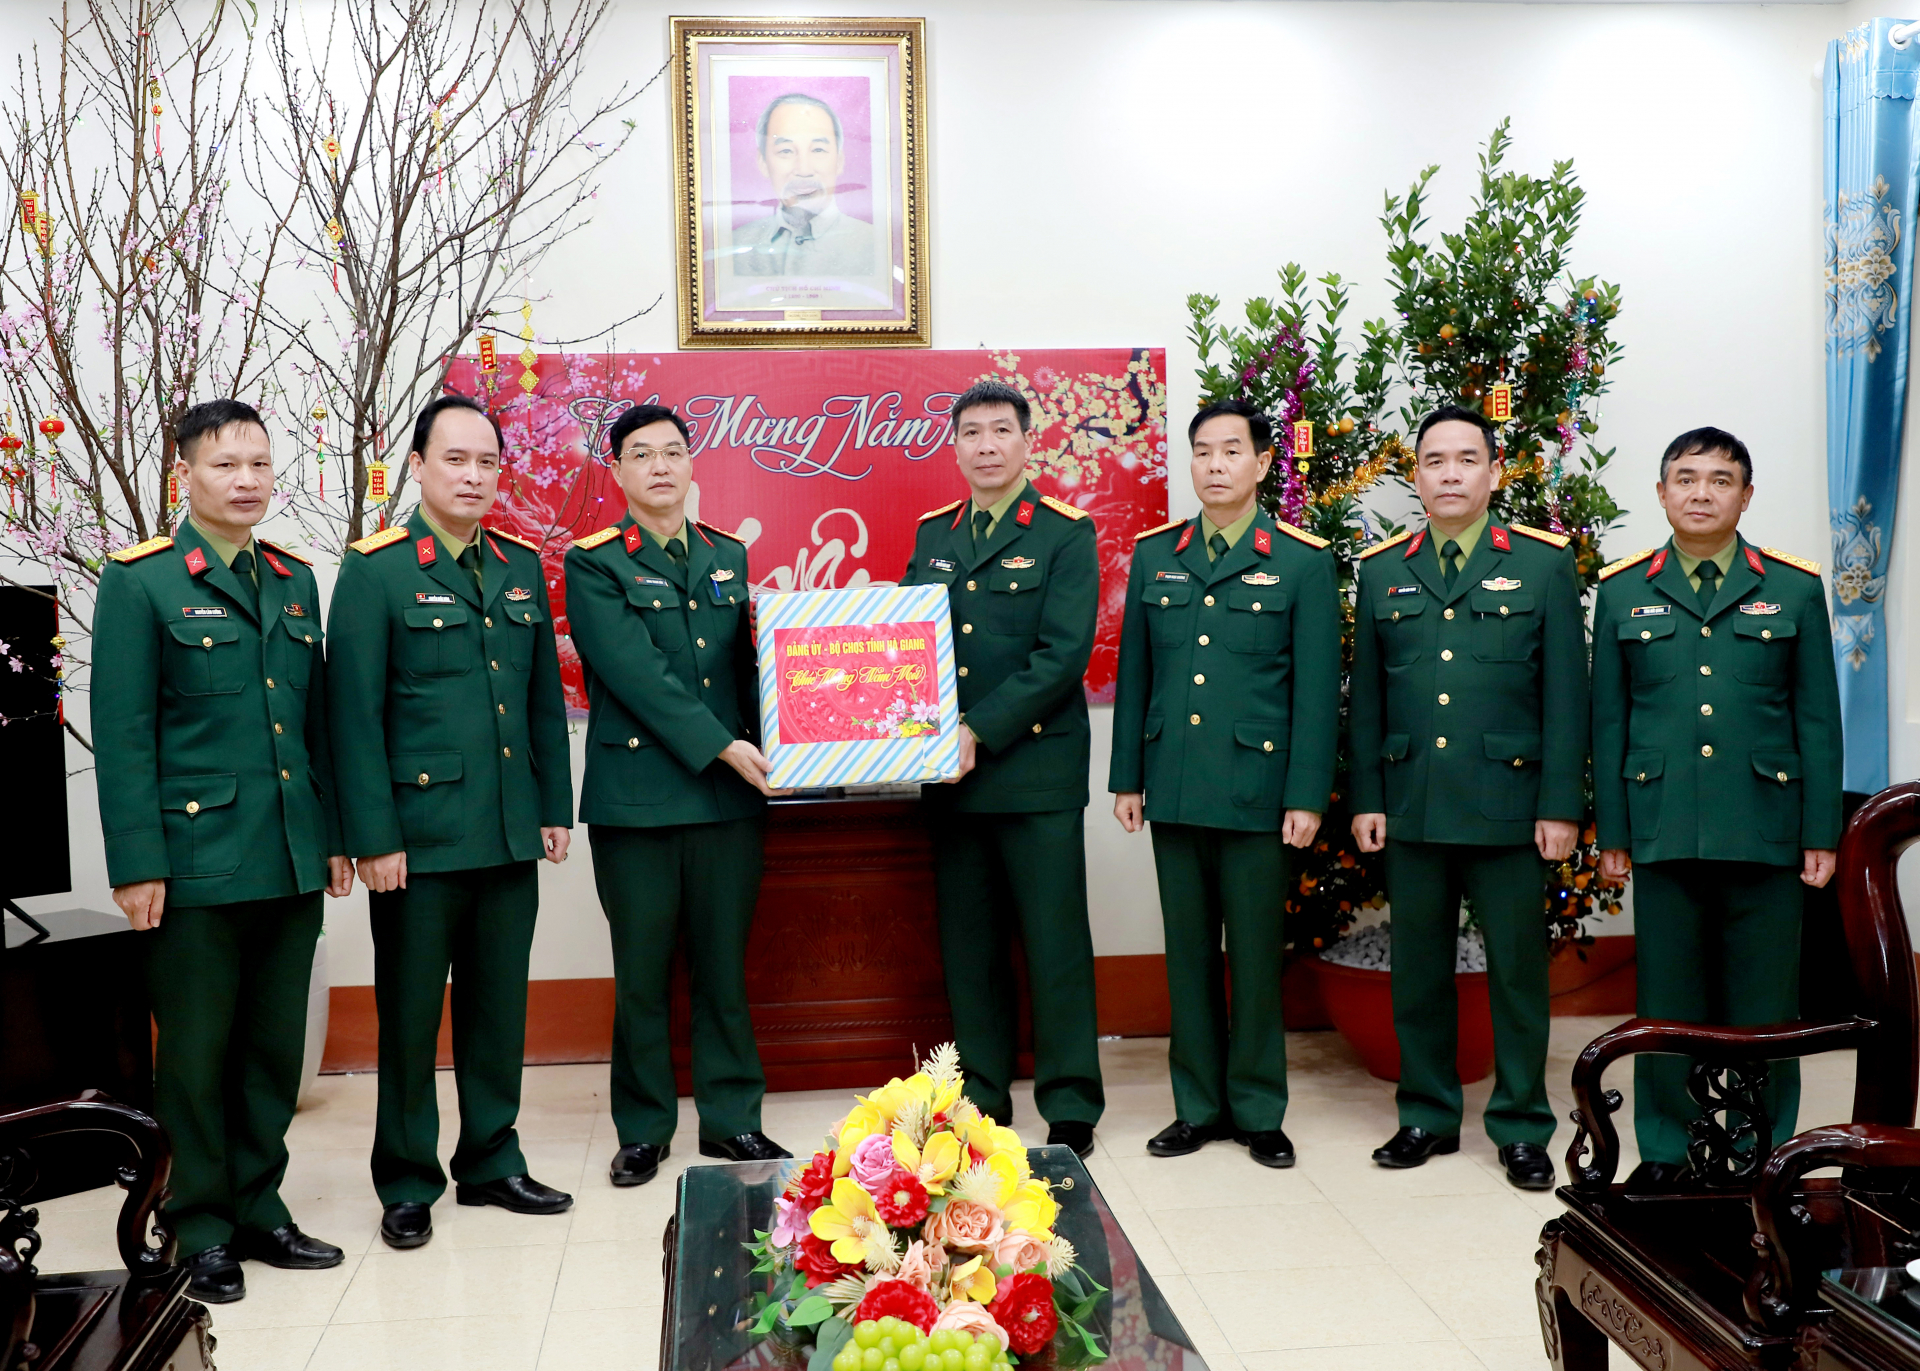 Lãnh đạo Bộ CHQS tỉnh tặng quà cán bộ, chiến sỹ Đoàn kinh tế Quốc phòng 313.

